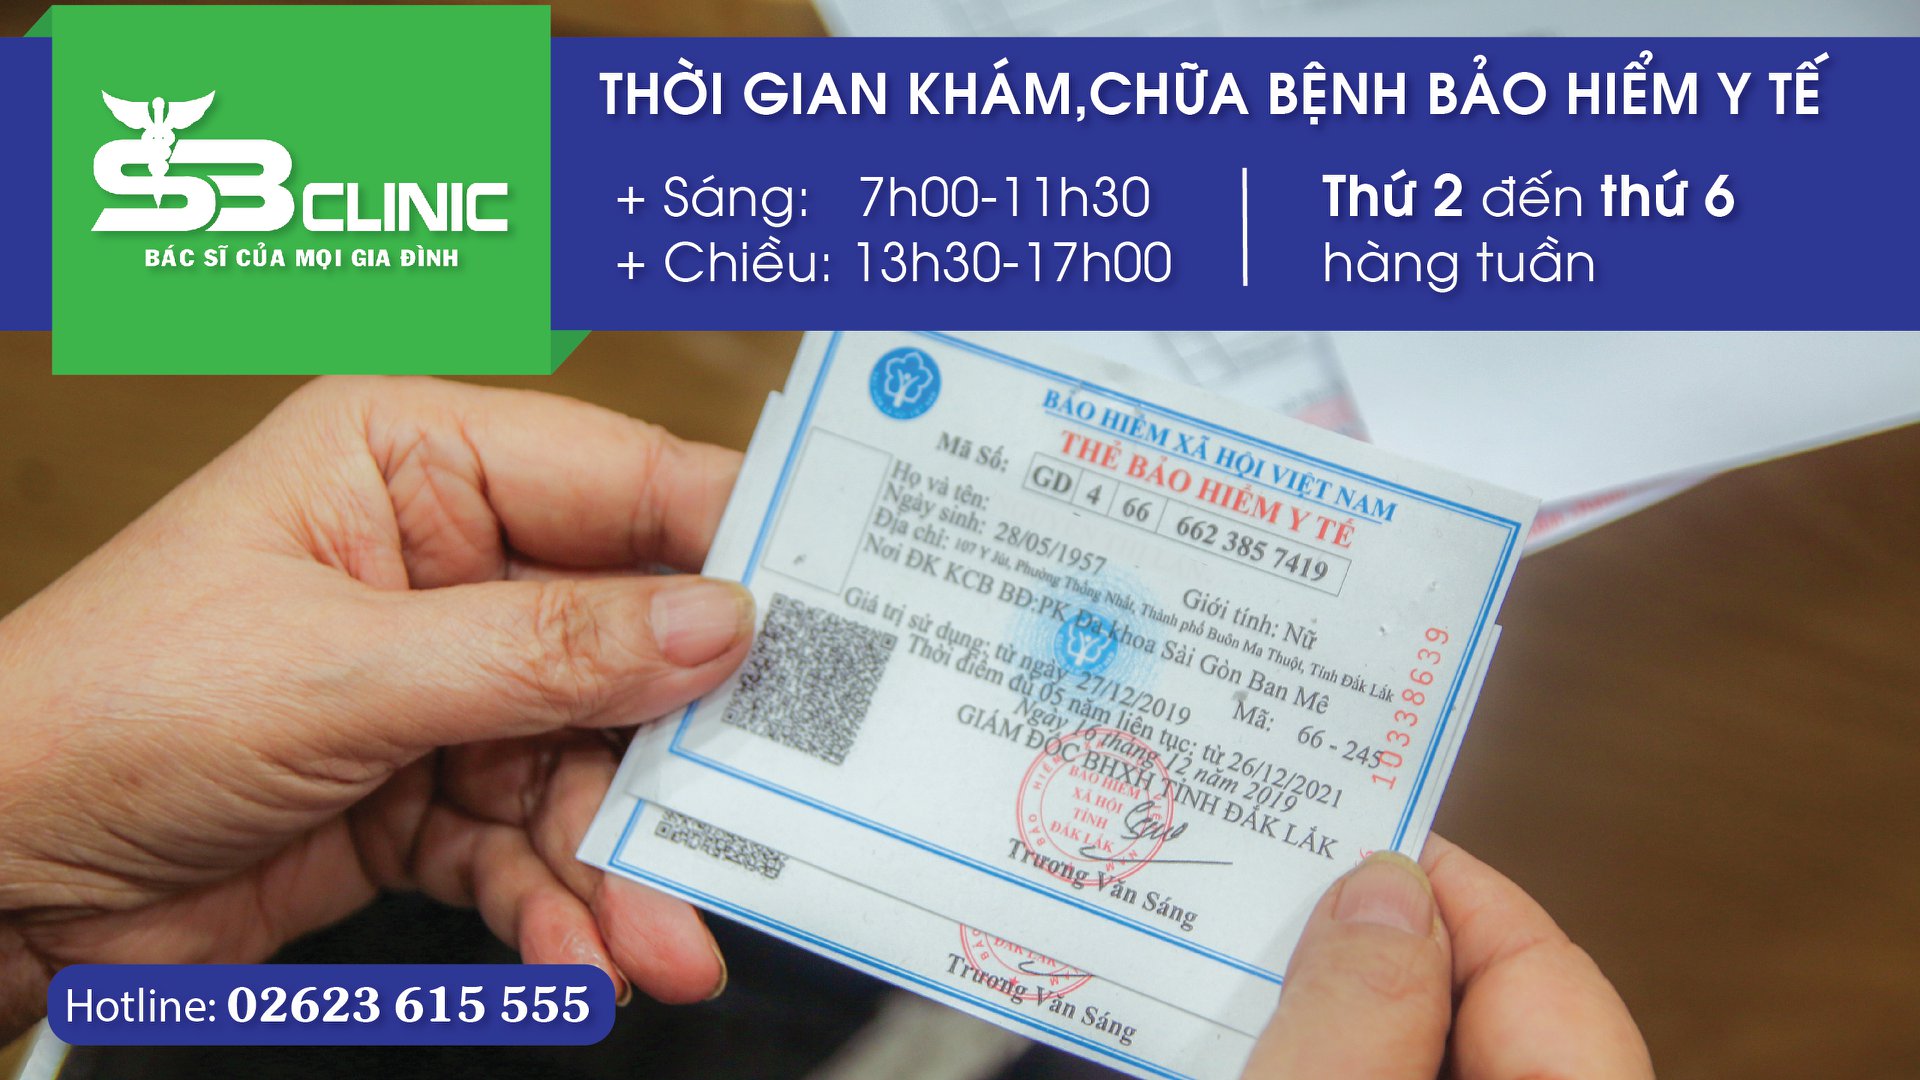 Thông báo thời gian khám chữa bệnh BHYT tại PKĐK Sài Gòn - Ban Mê